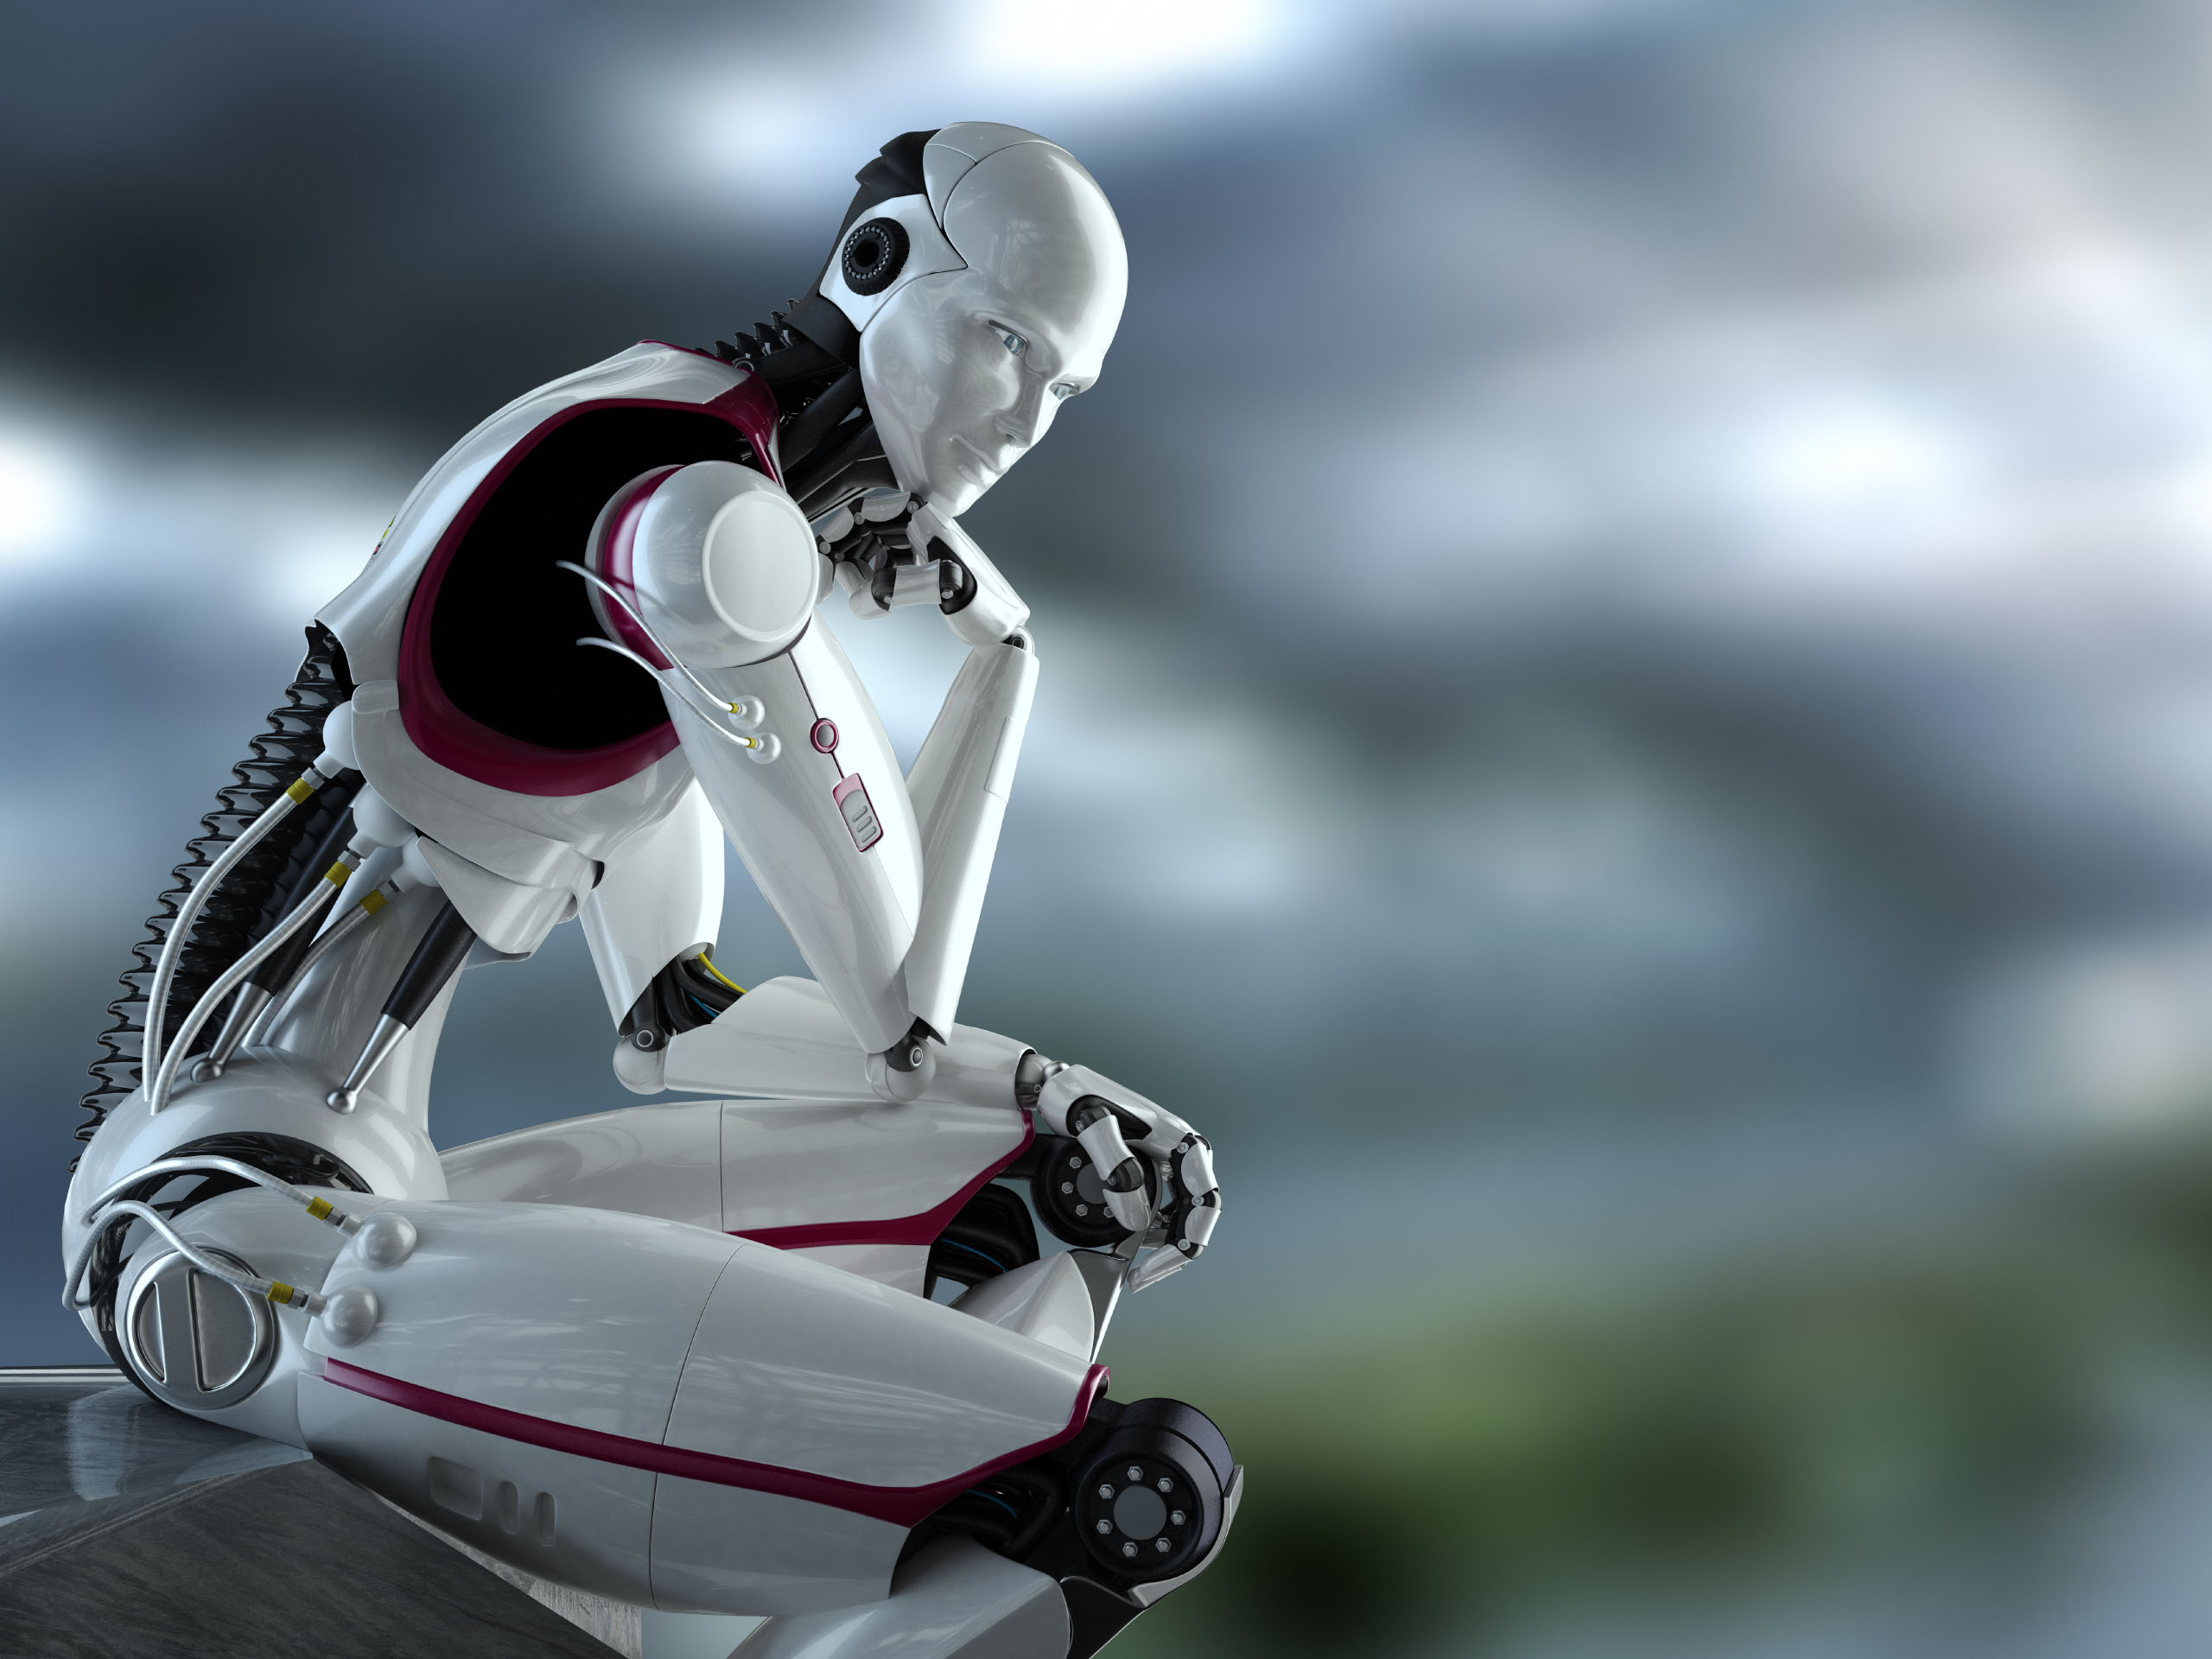 Το πρώτο ρομπότ στην ιστορία της ανθρωπότητας